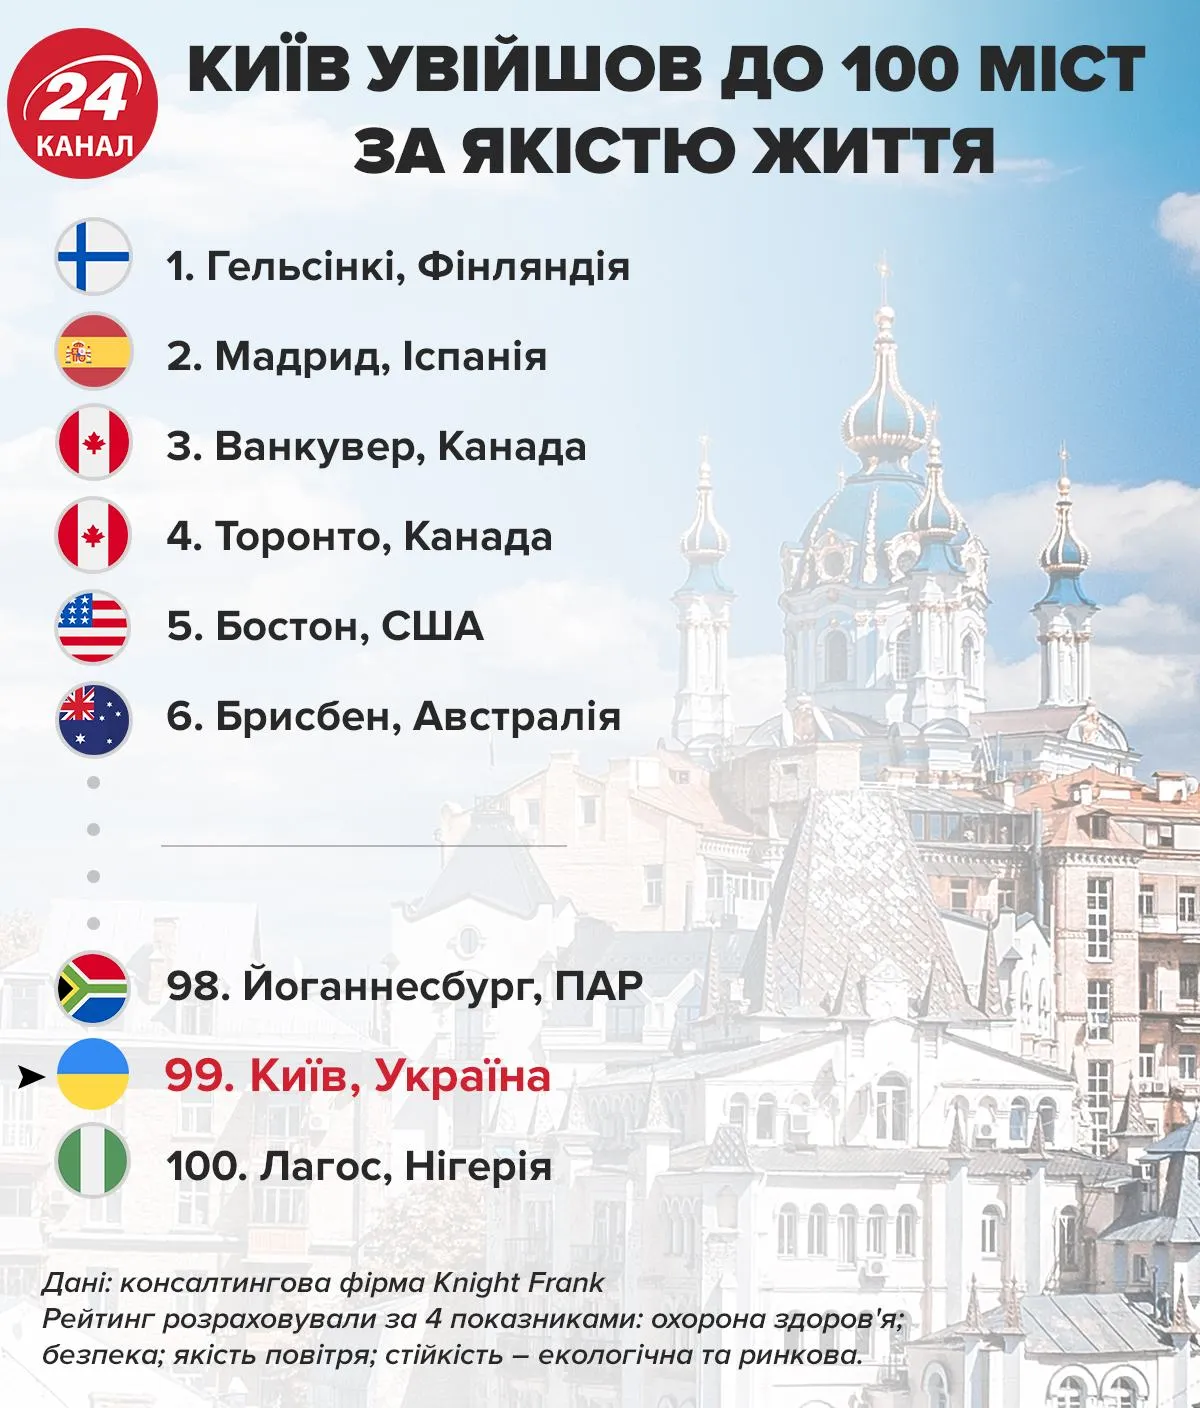 Киев вошел в 100 городов по качеству жизни / Инфографика 24 канала